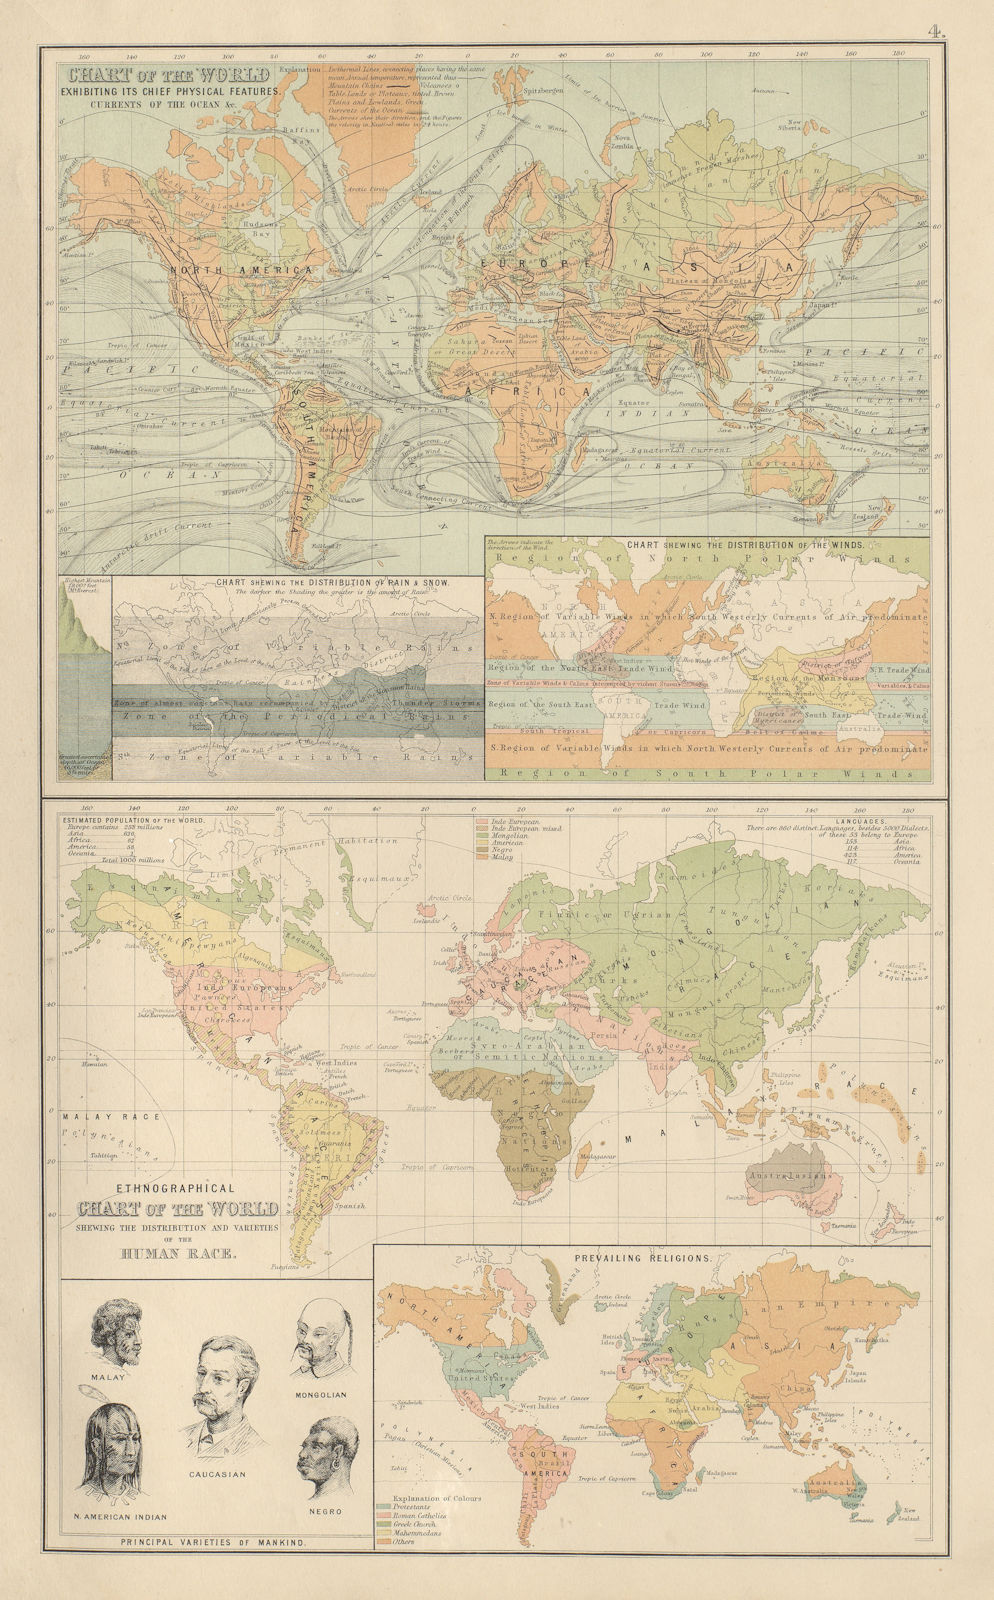 Physical & Ethnographical Charts of the World. Ethnic. BARTHOLOMEW 1898 map